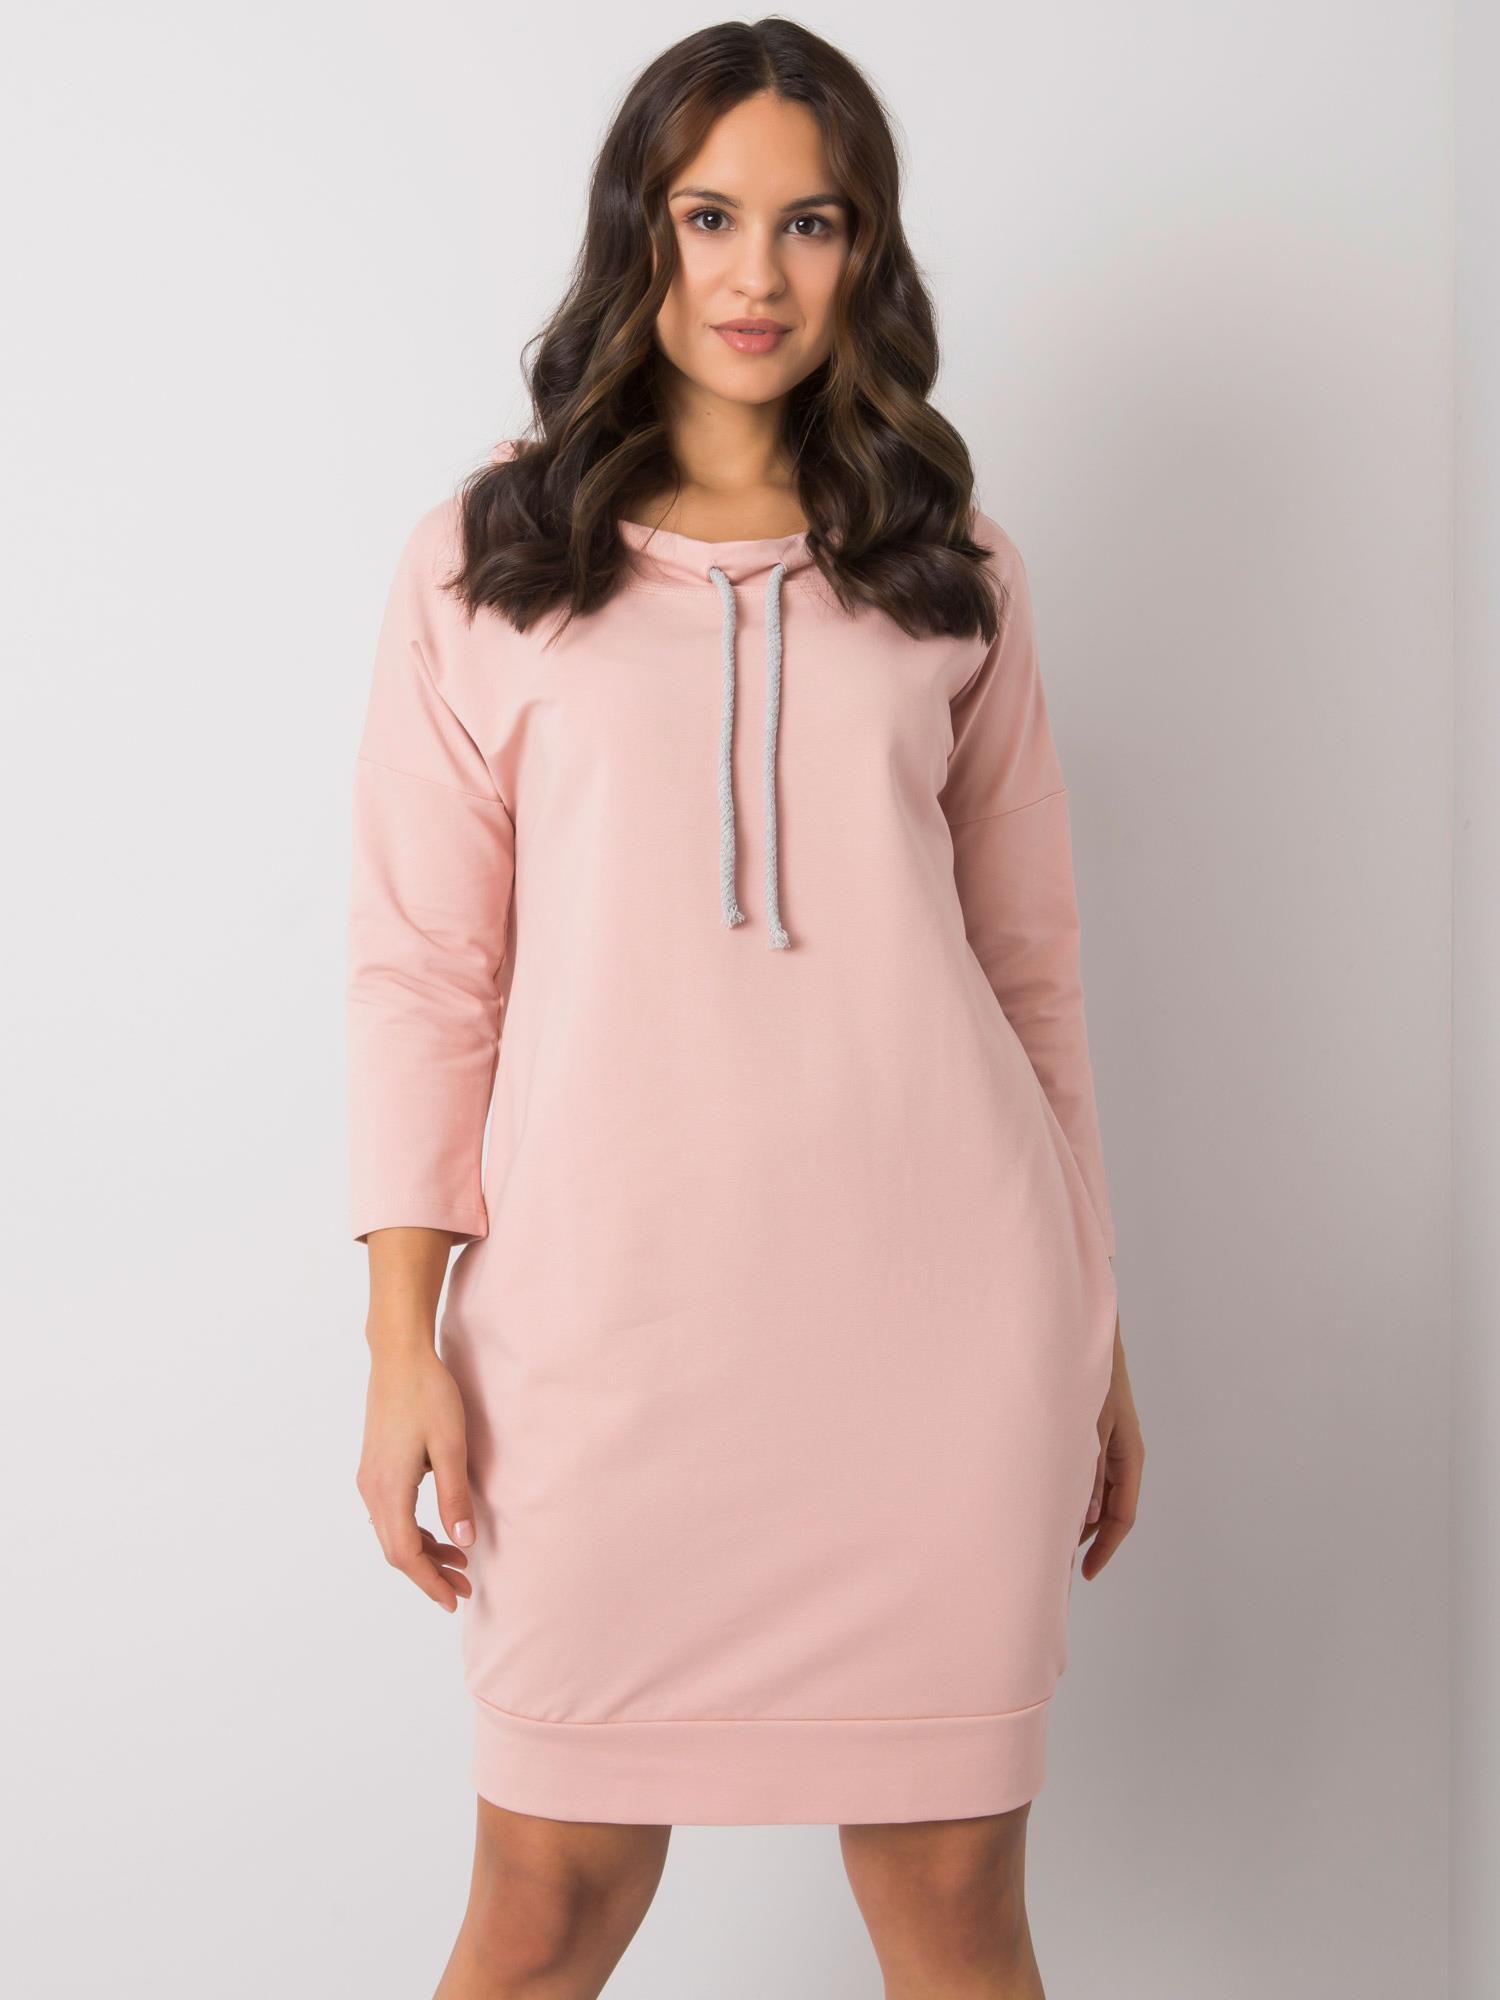 Světle růžové dámské mikinové šaty s kapsami RV-SK-4597-1.97-pink Velikost: S/M